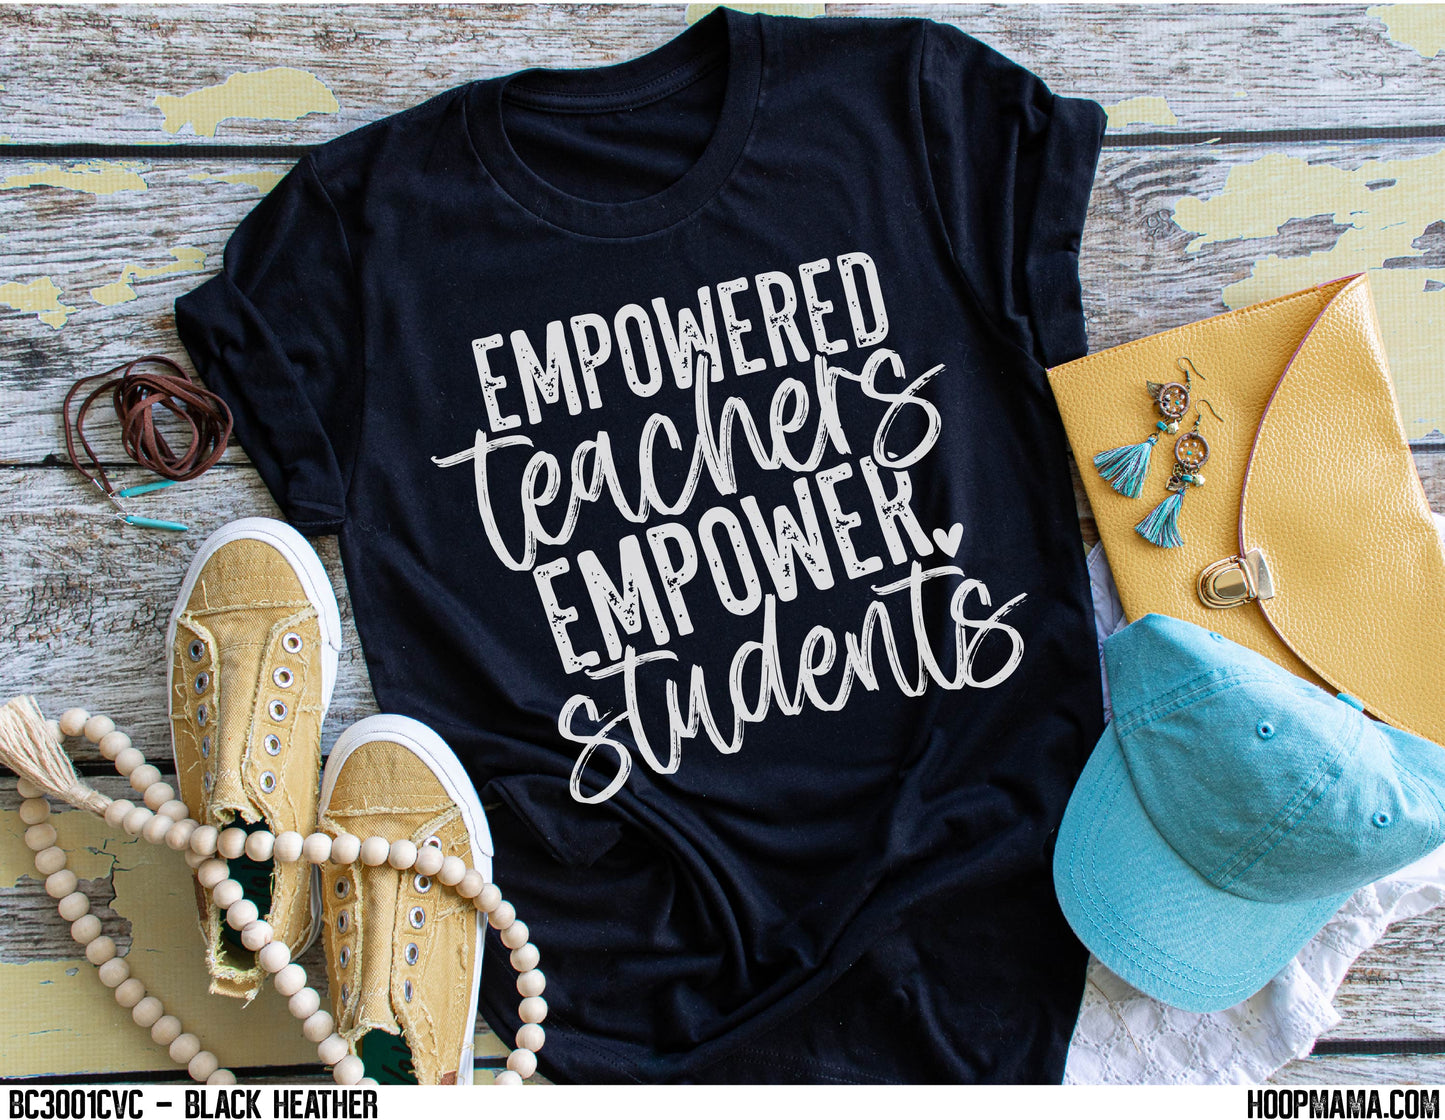 Empowered teachers empower students